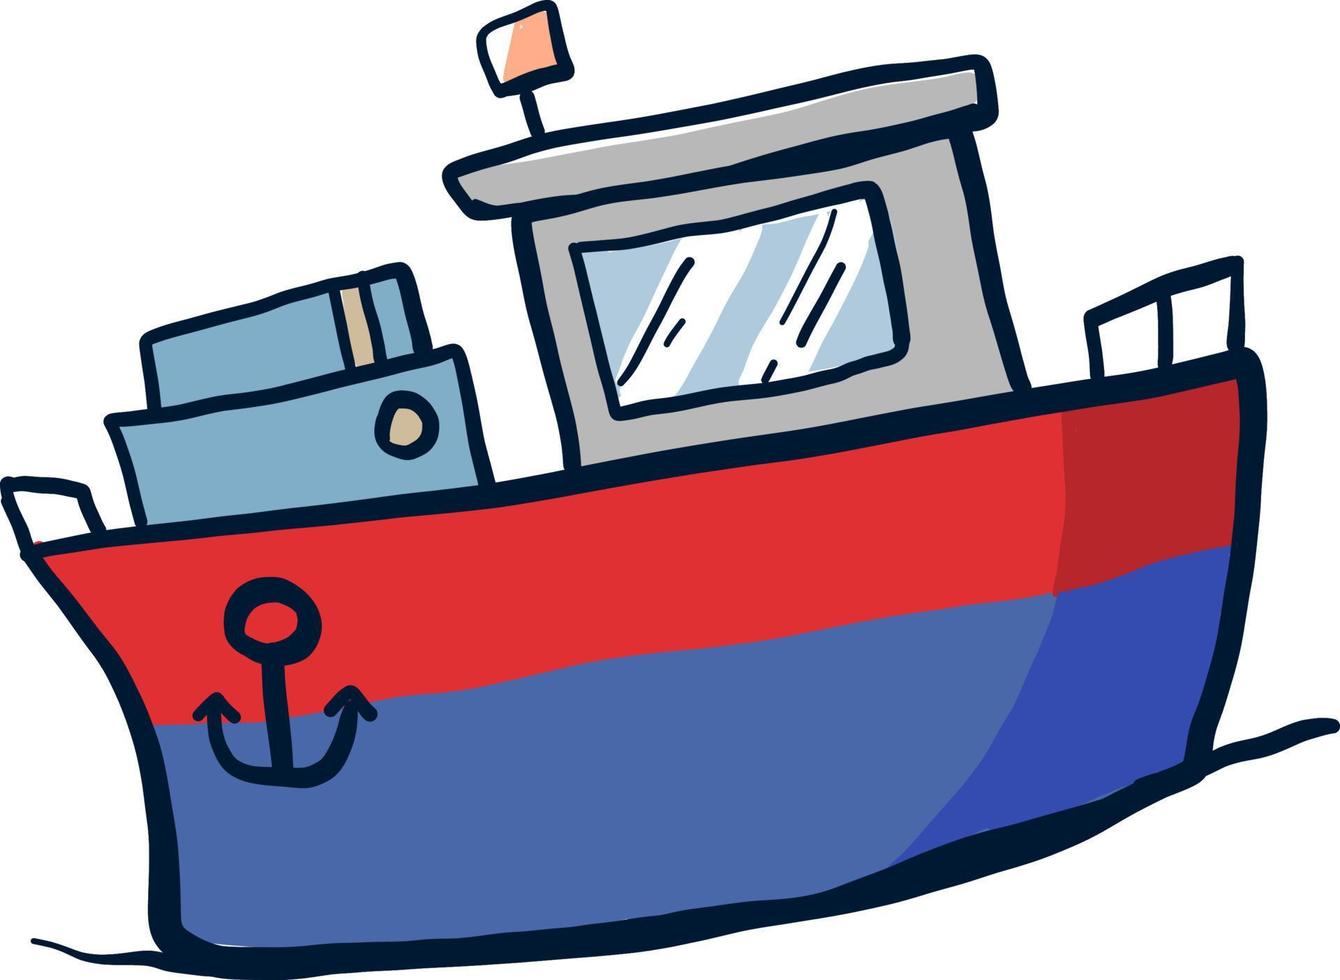 Navire bleu et rouge, illustration, vecteur sur fond blanc.